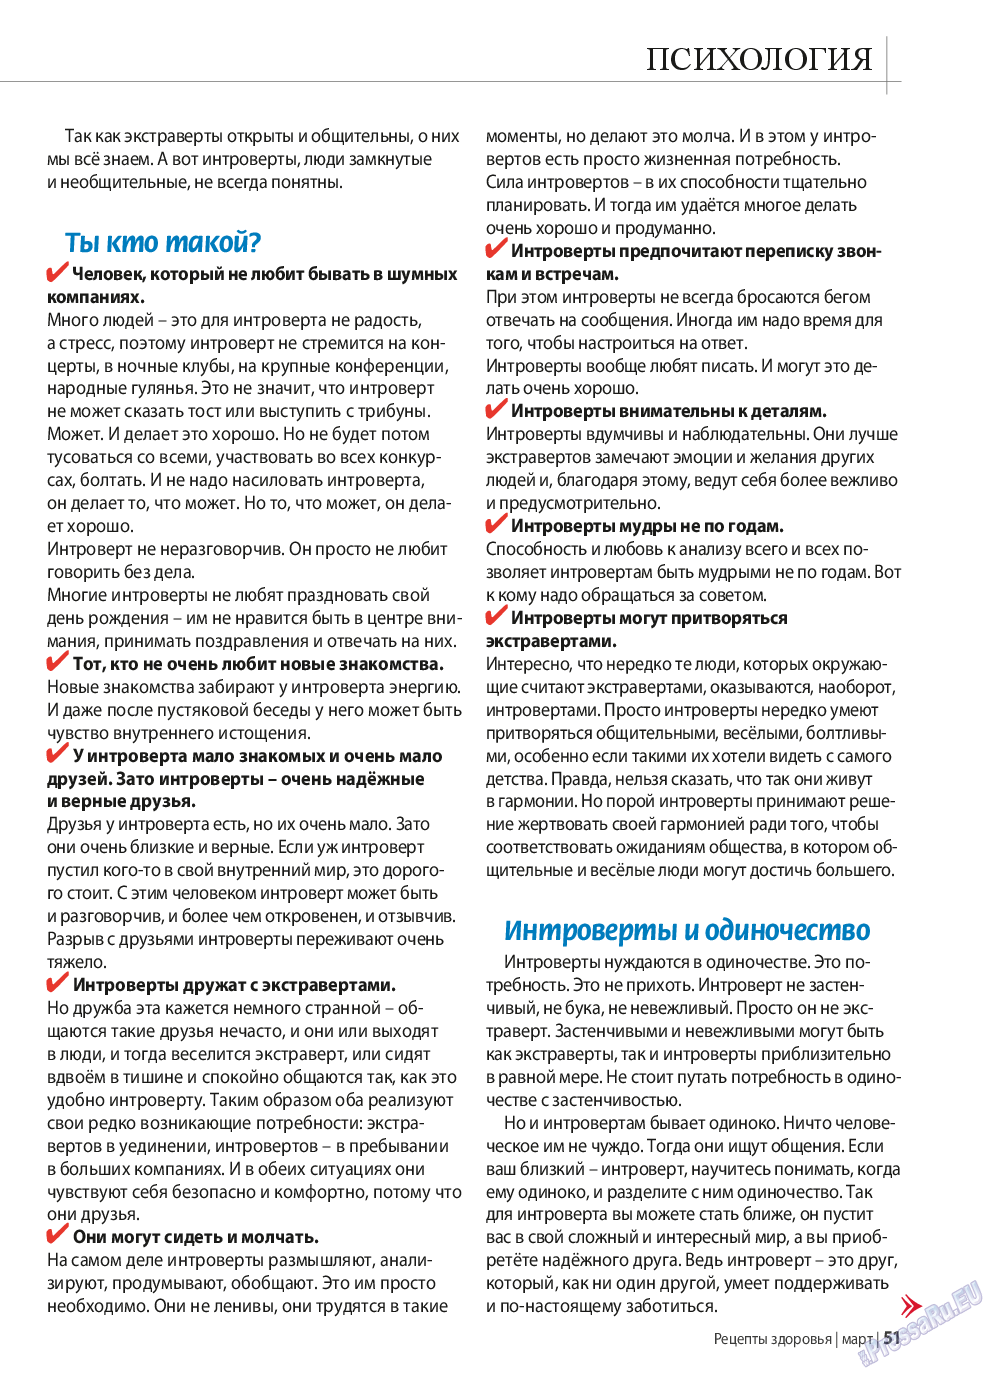 Рецепты здоровья, журнал. 2015 №70 стр.51